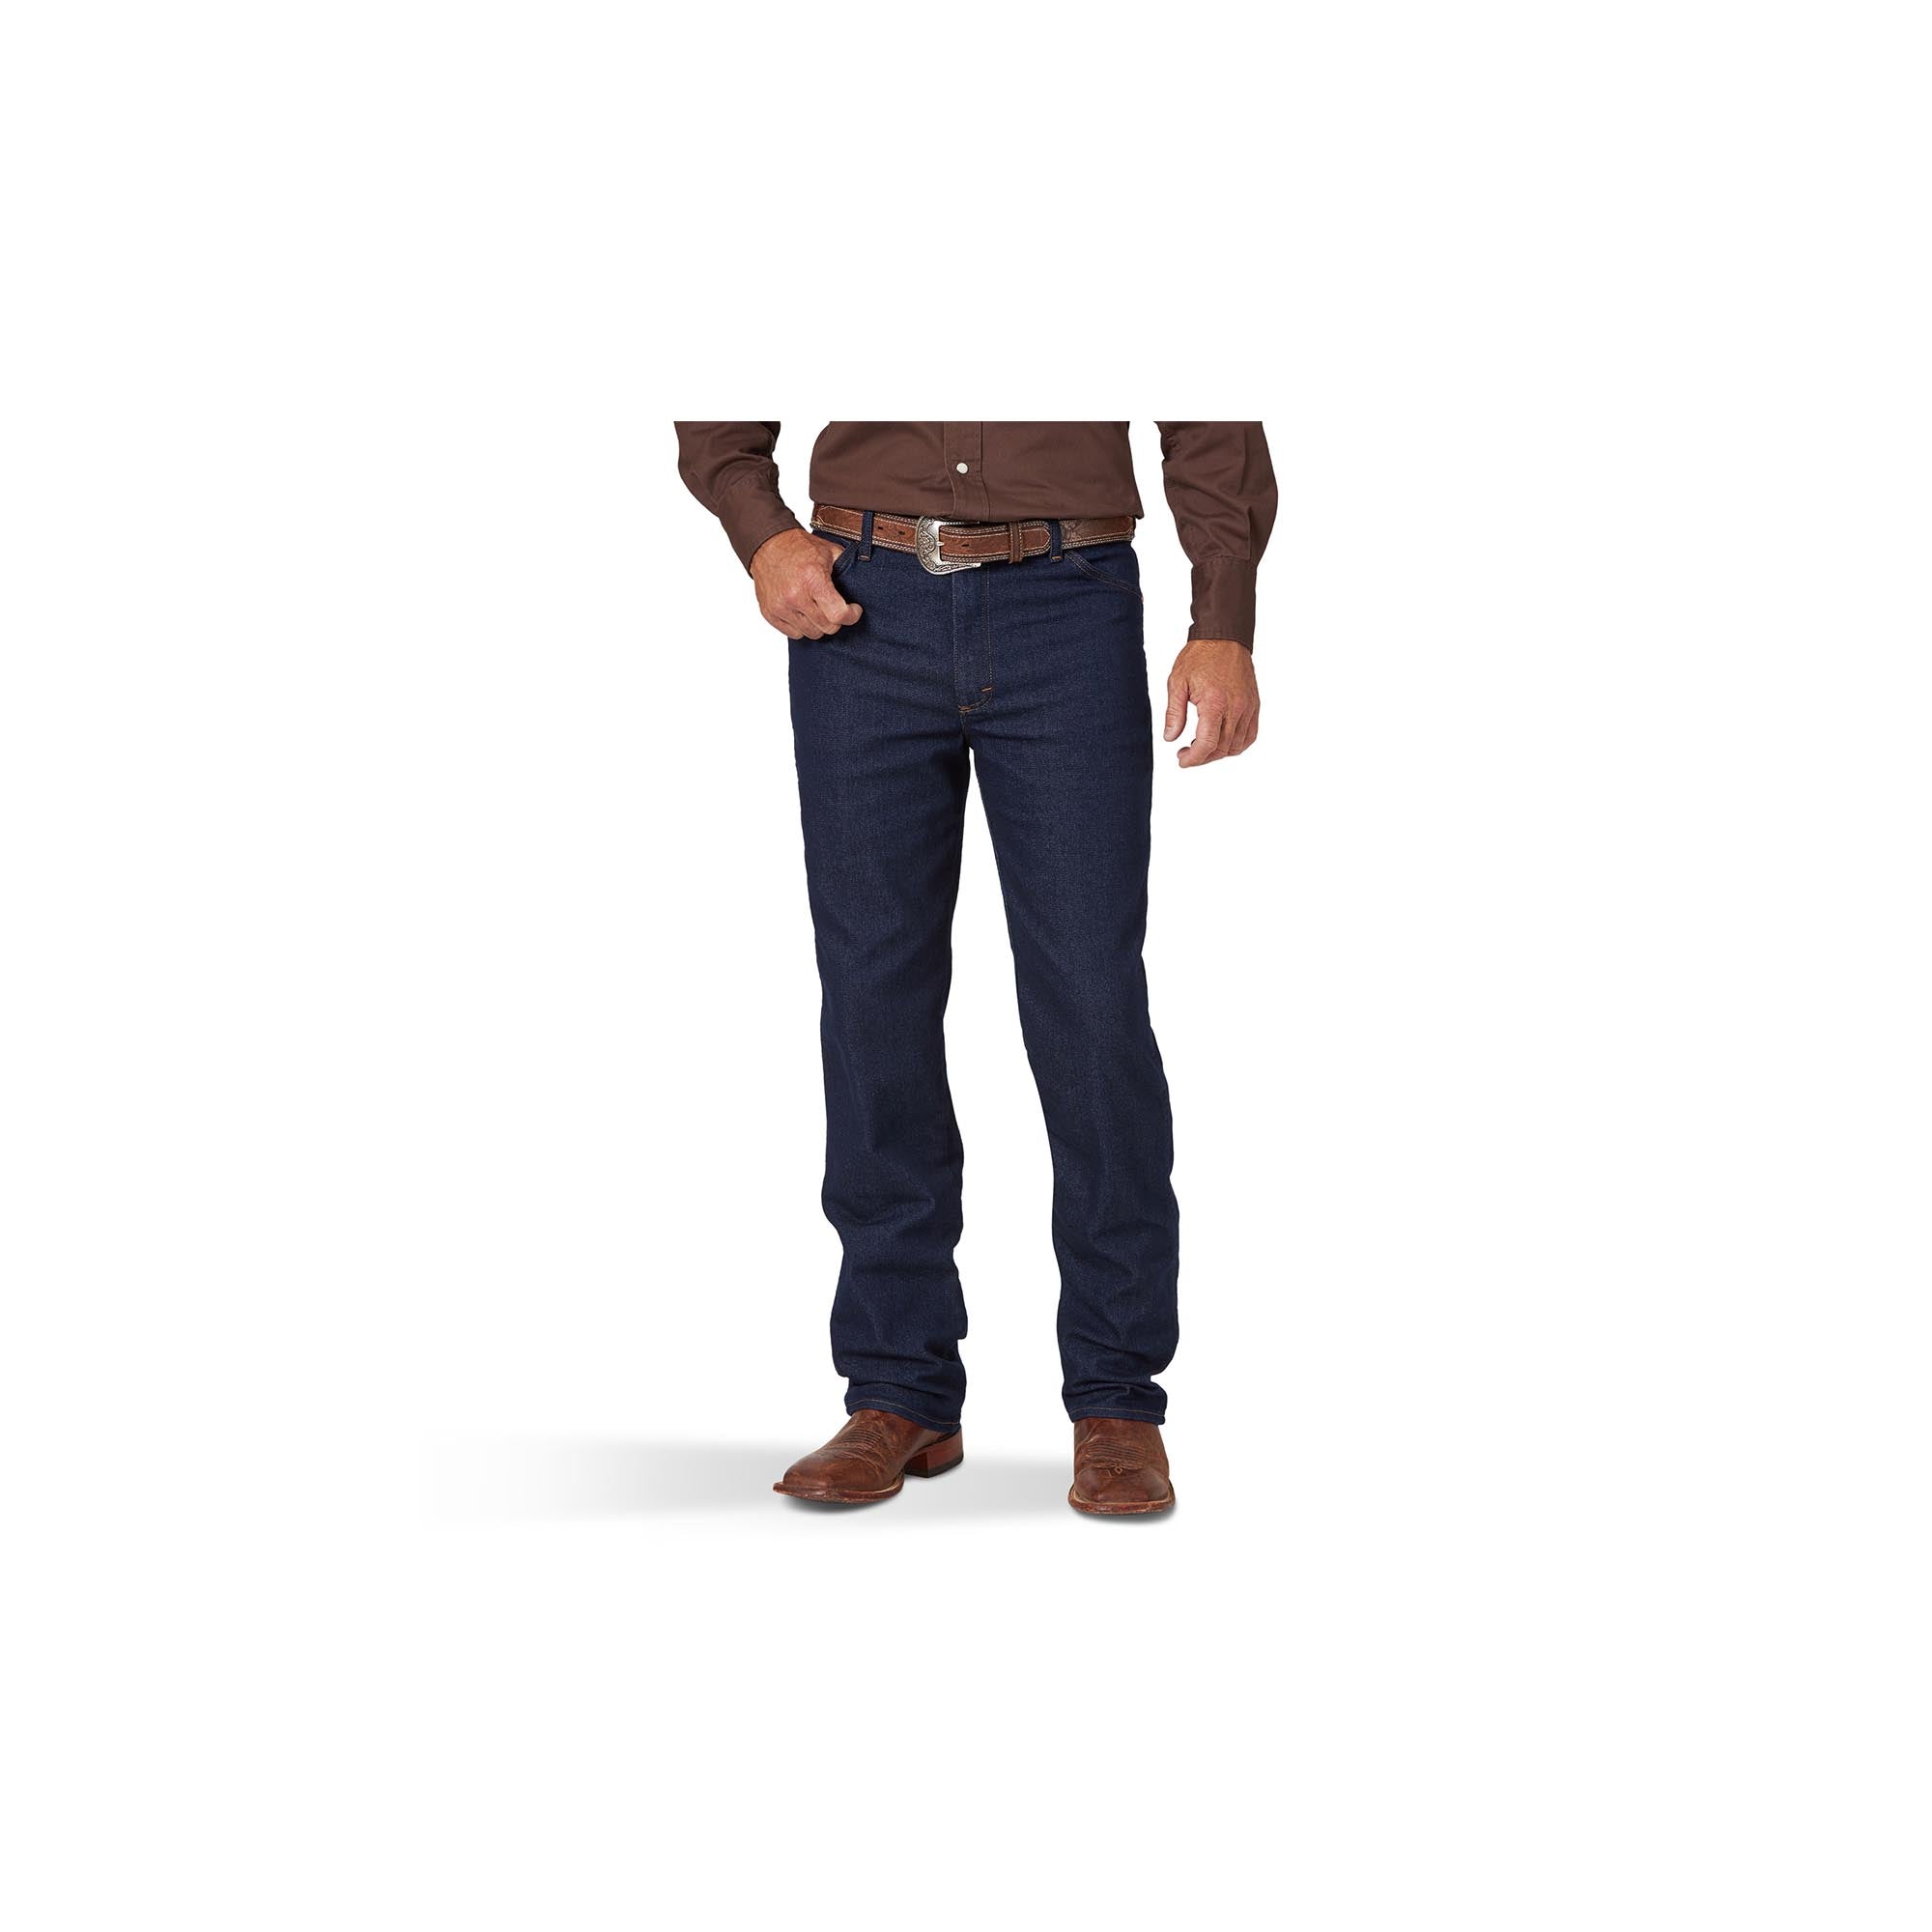 Wrangler Men's Cowboy Cut Active Flex Indigo Dark Bootcut Jeans